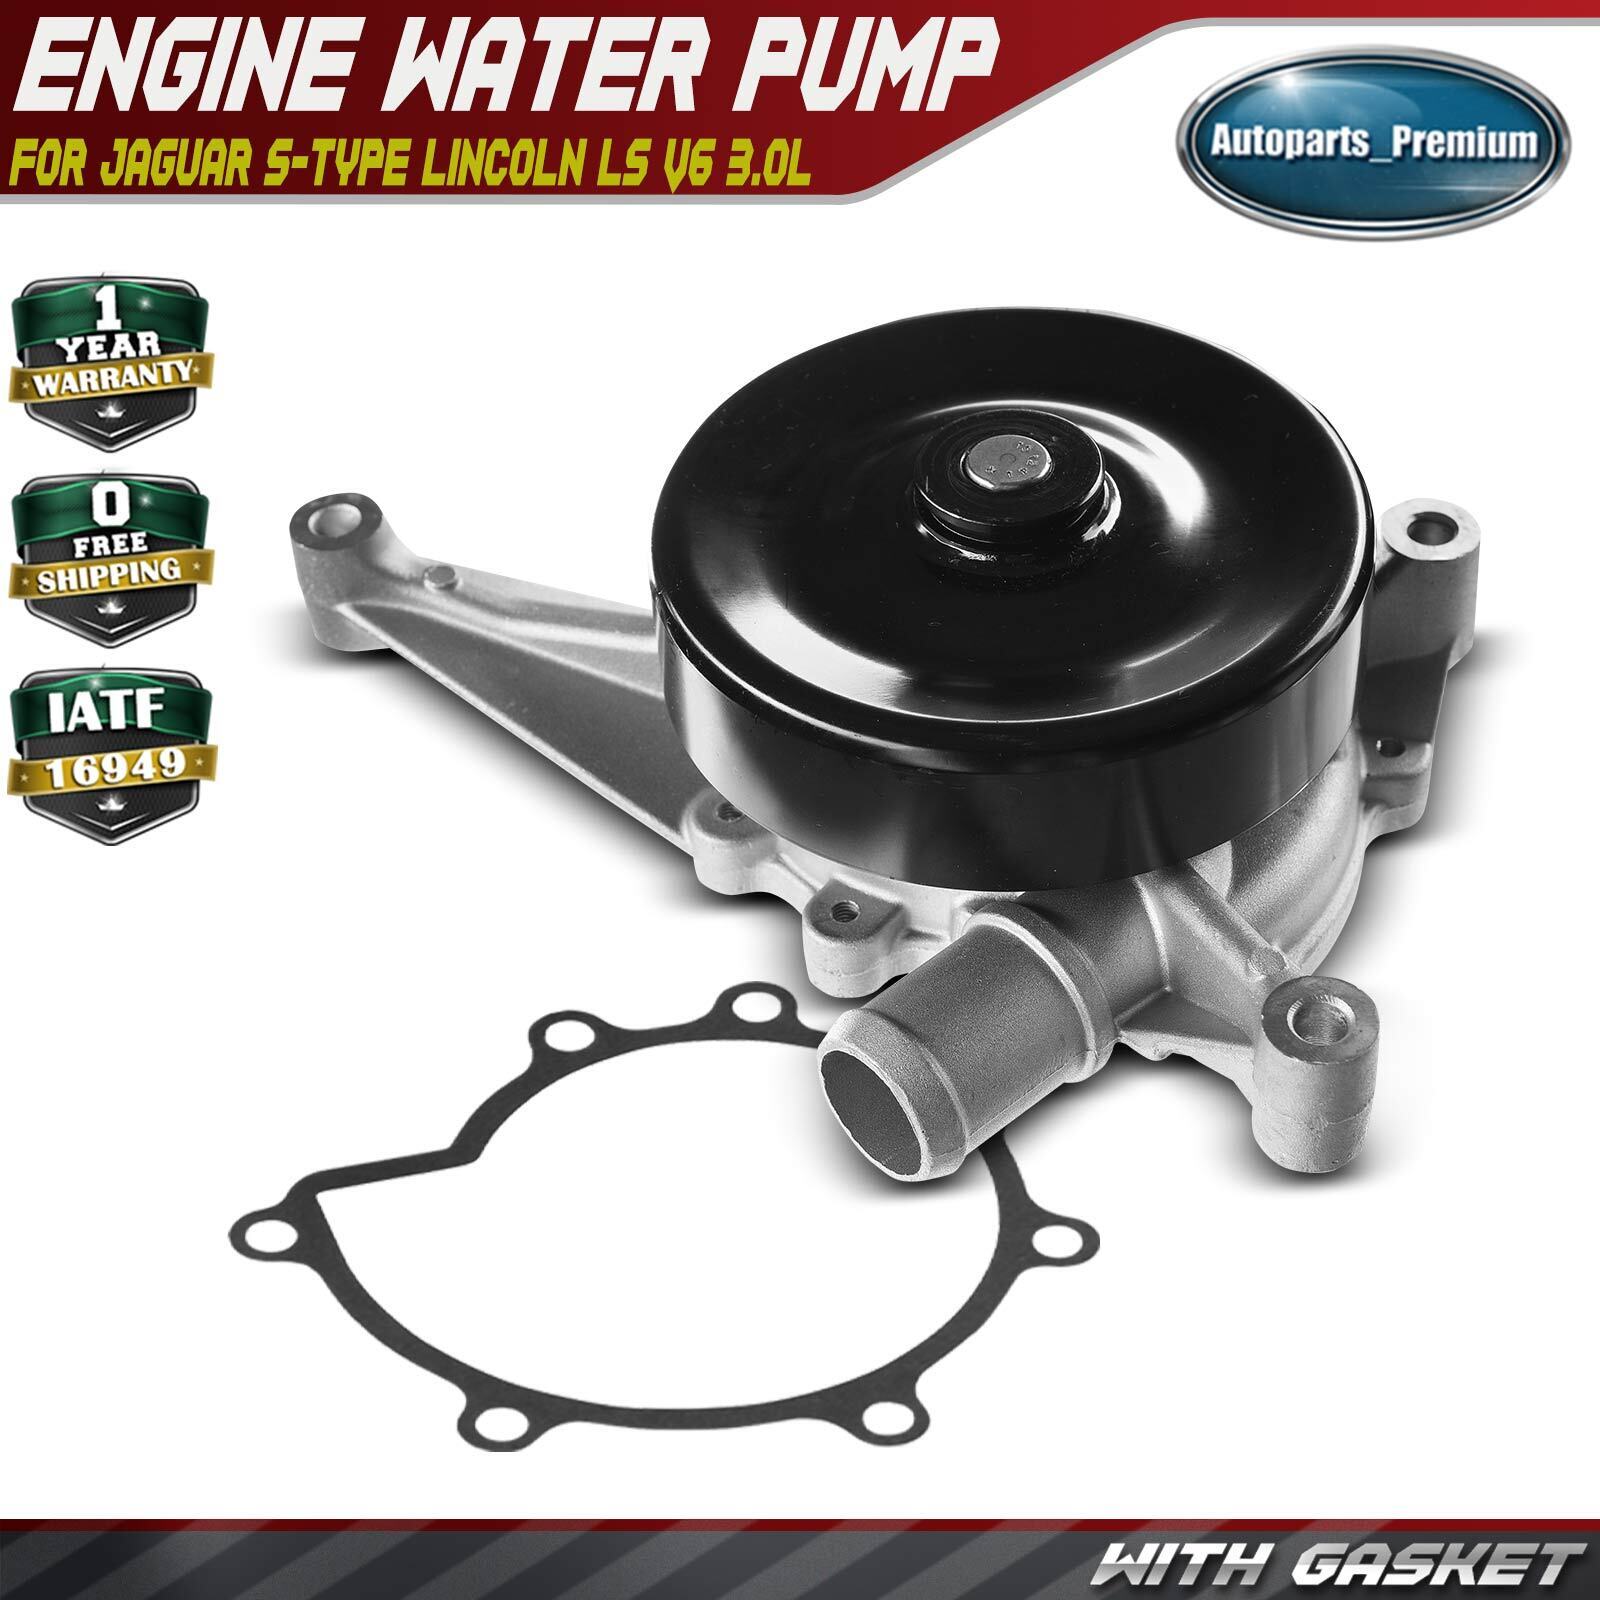 Engine Water Pump for Jaguar S-Type 2000-2008 Lincoln LS 2003-2005 V6 3.0L DOHC